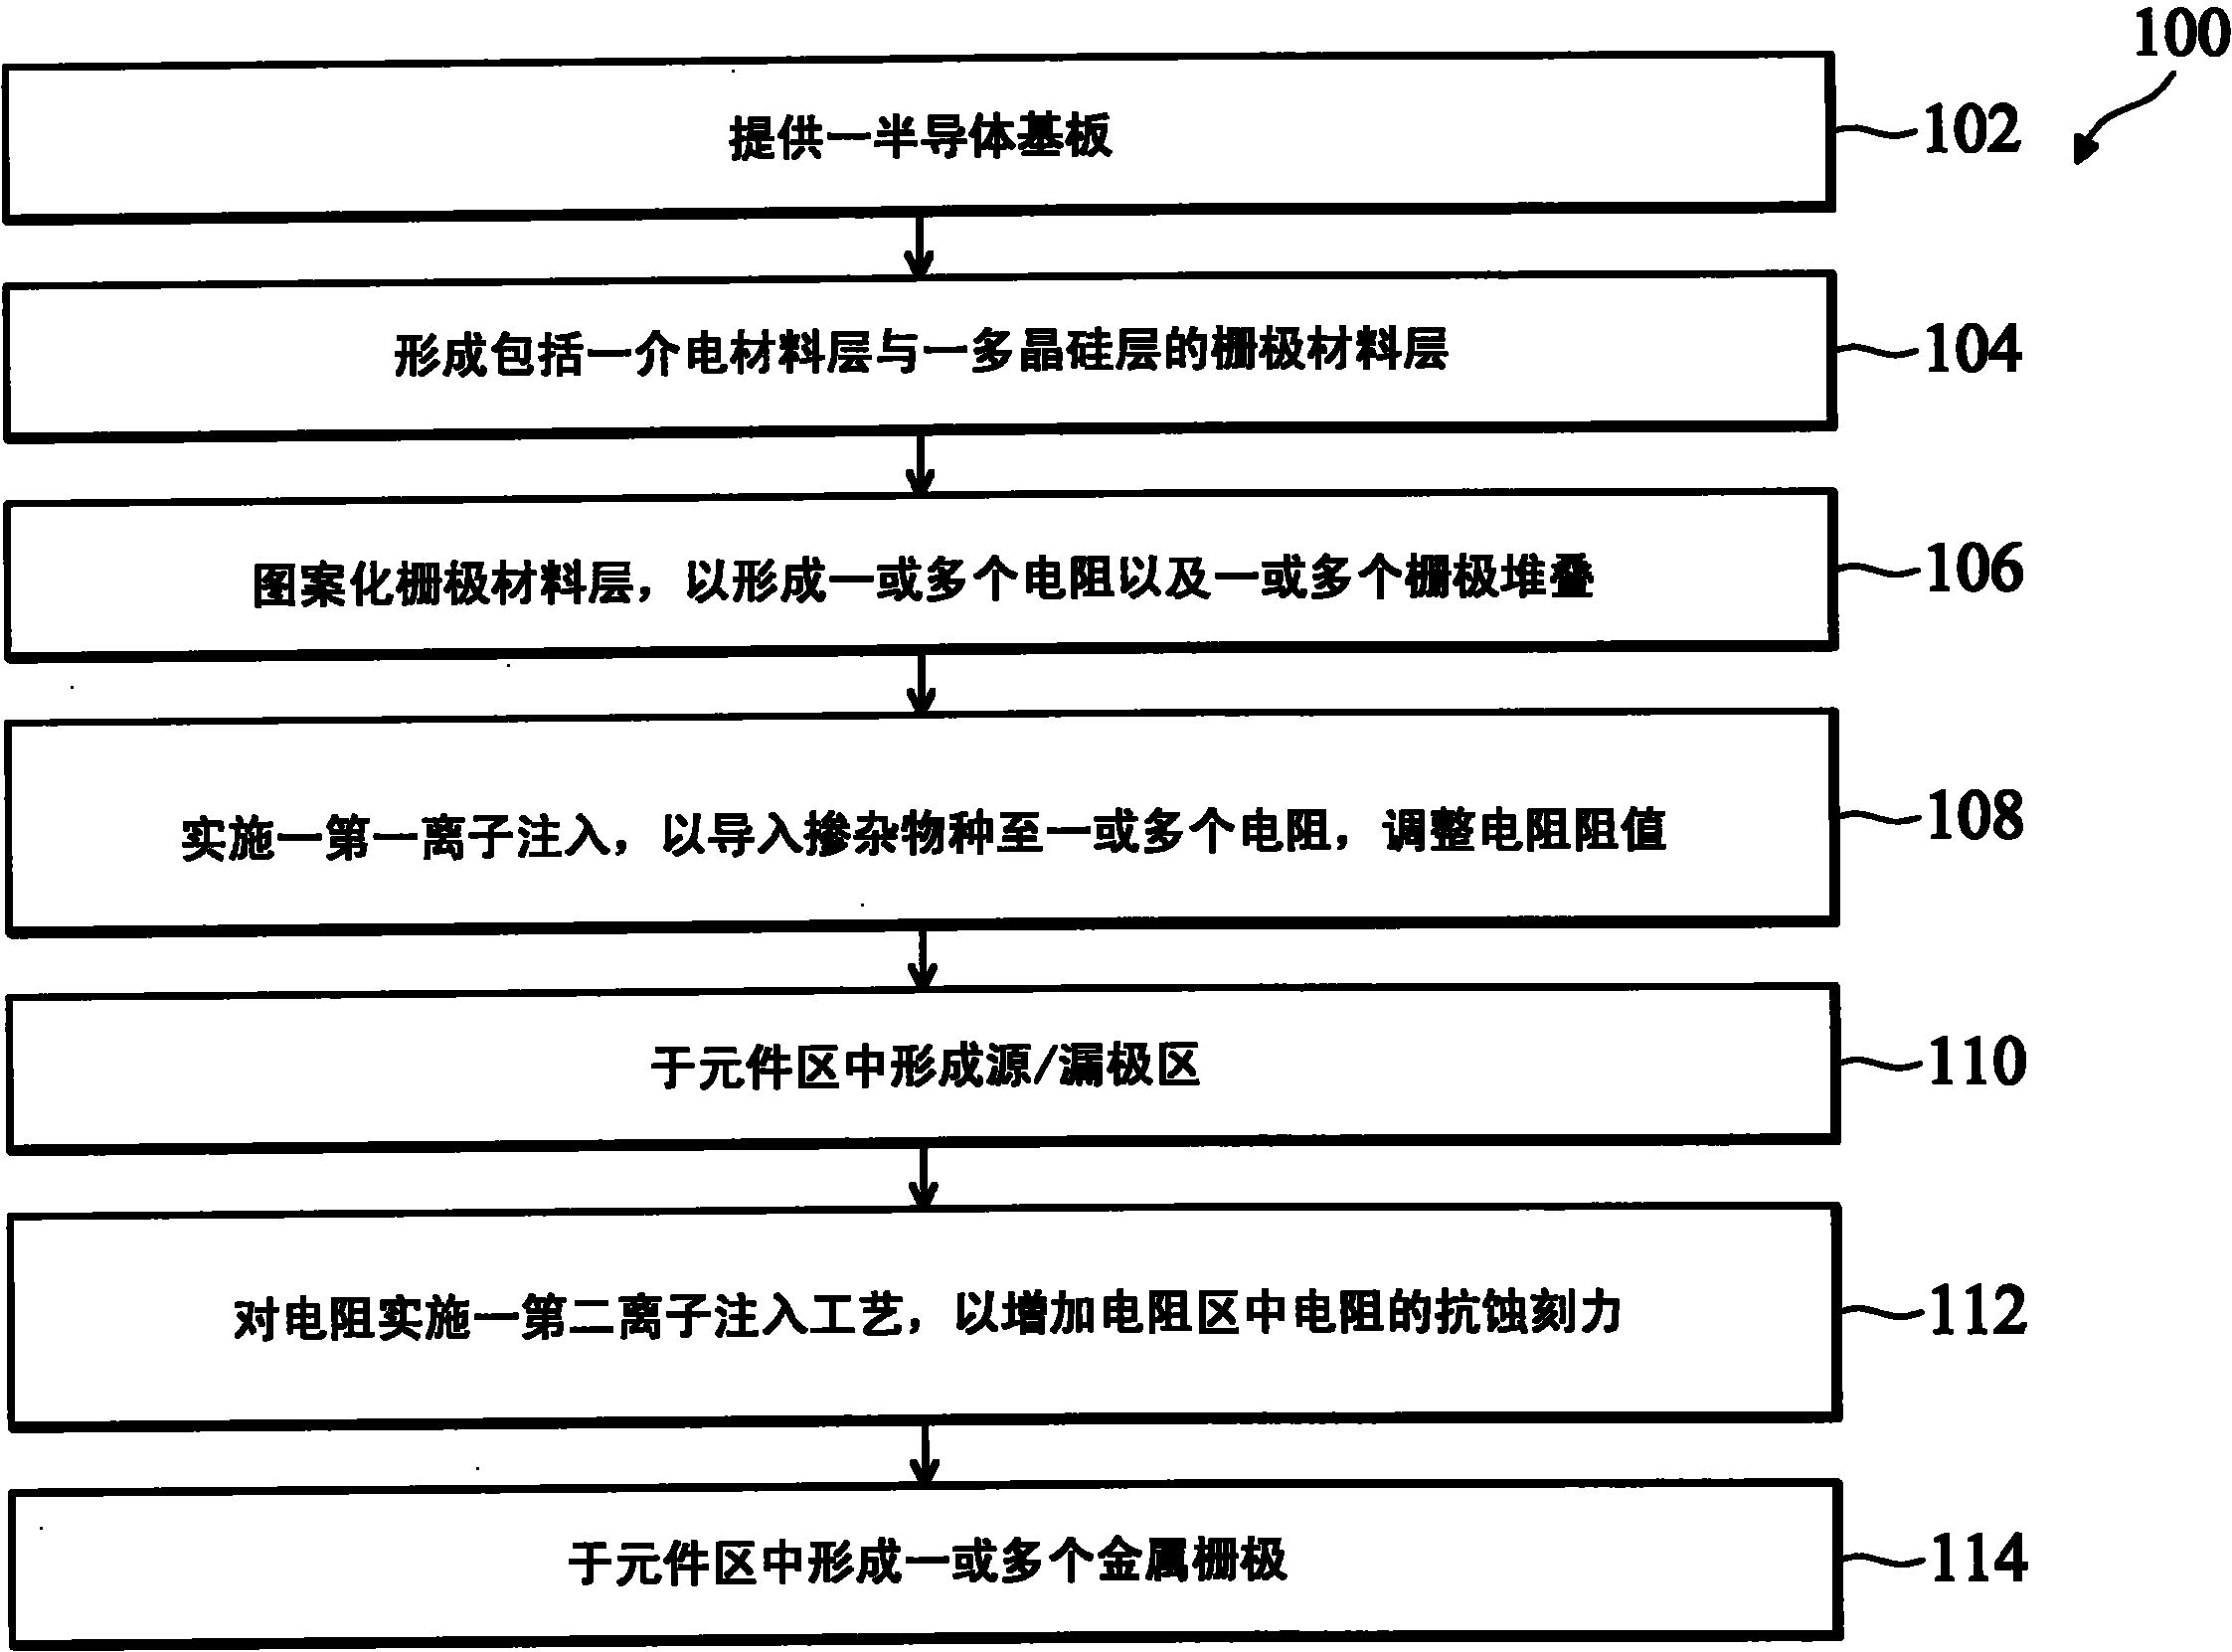 华岭股份北交所过会：专注集成电路测试领域 去年利润9012万元